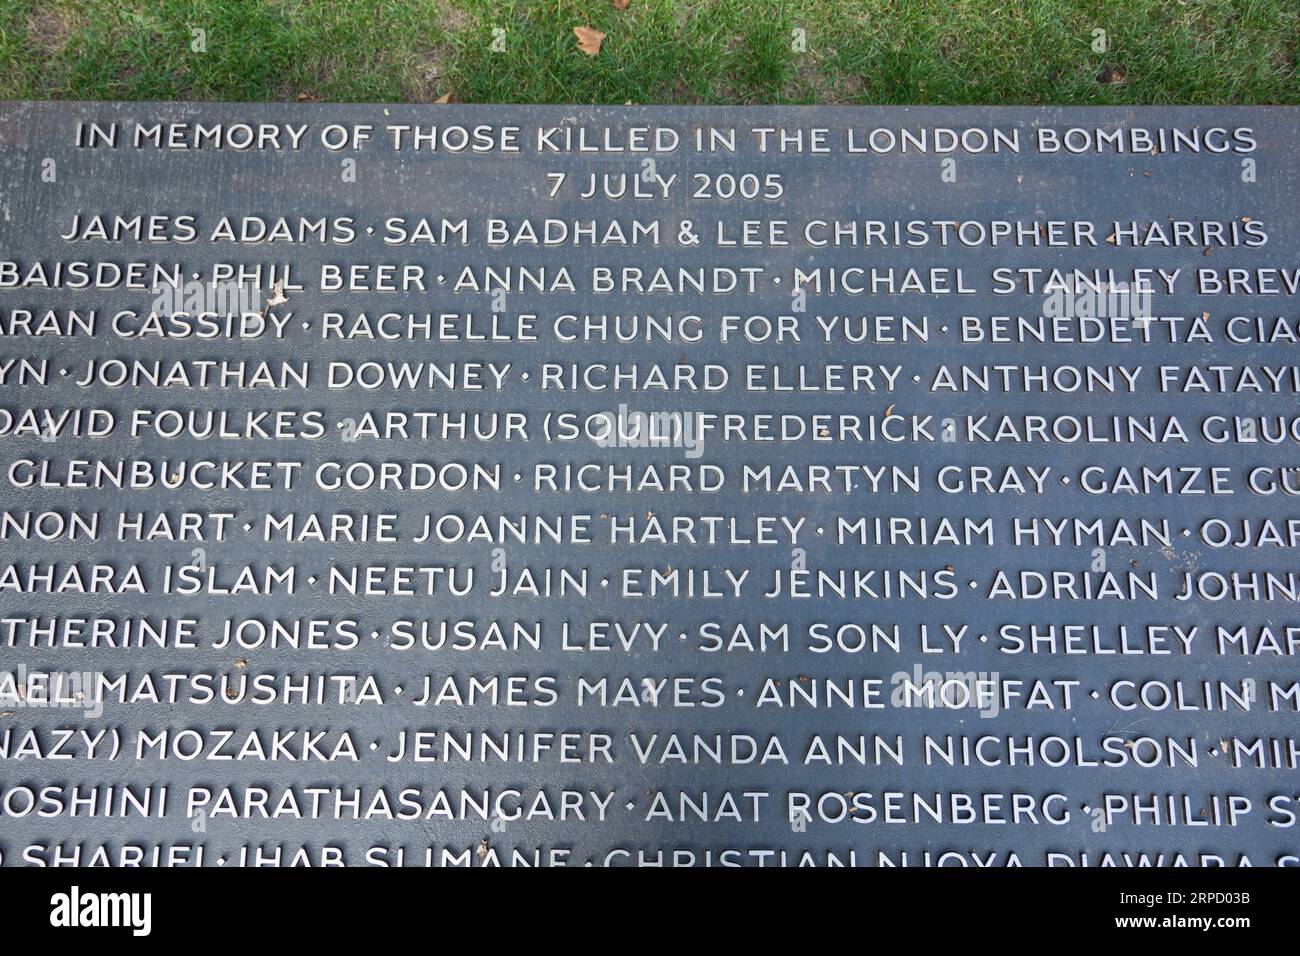 Les noms des personnes tuées sur le Hyde Park Memorial - à la mémoire des personnes tuées dans les attentats à la bombe de Londres du 7 juillet 2005, Londres, Angleterre, Royaume-Uni Banque D'Images